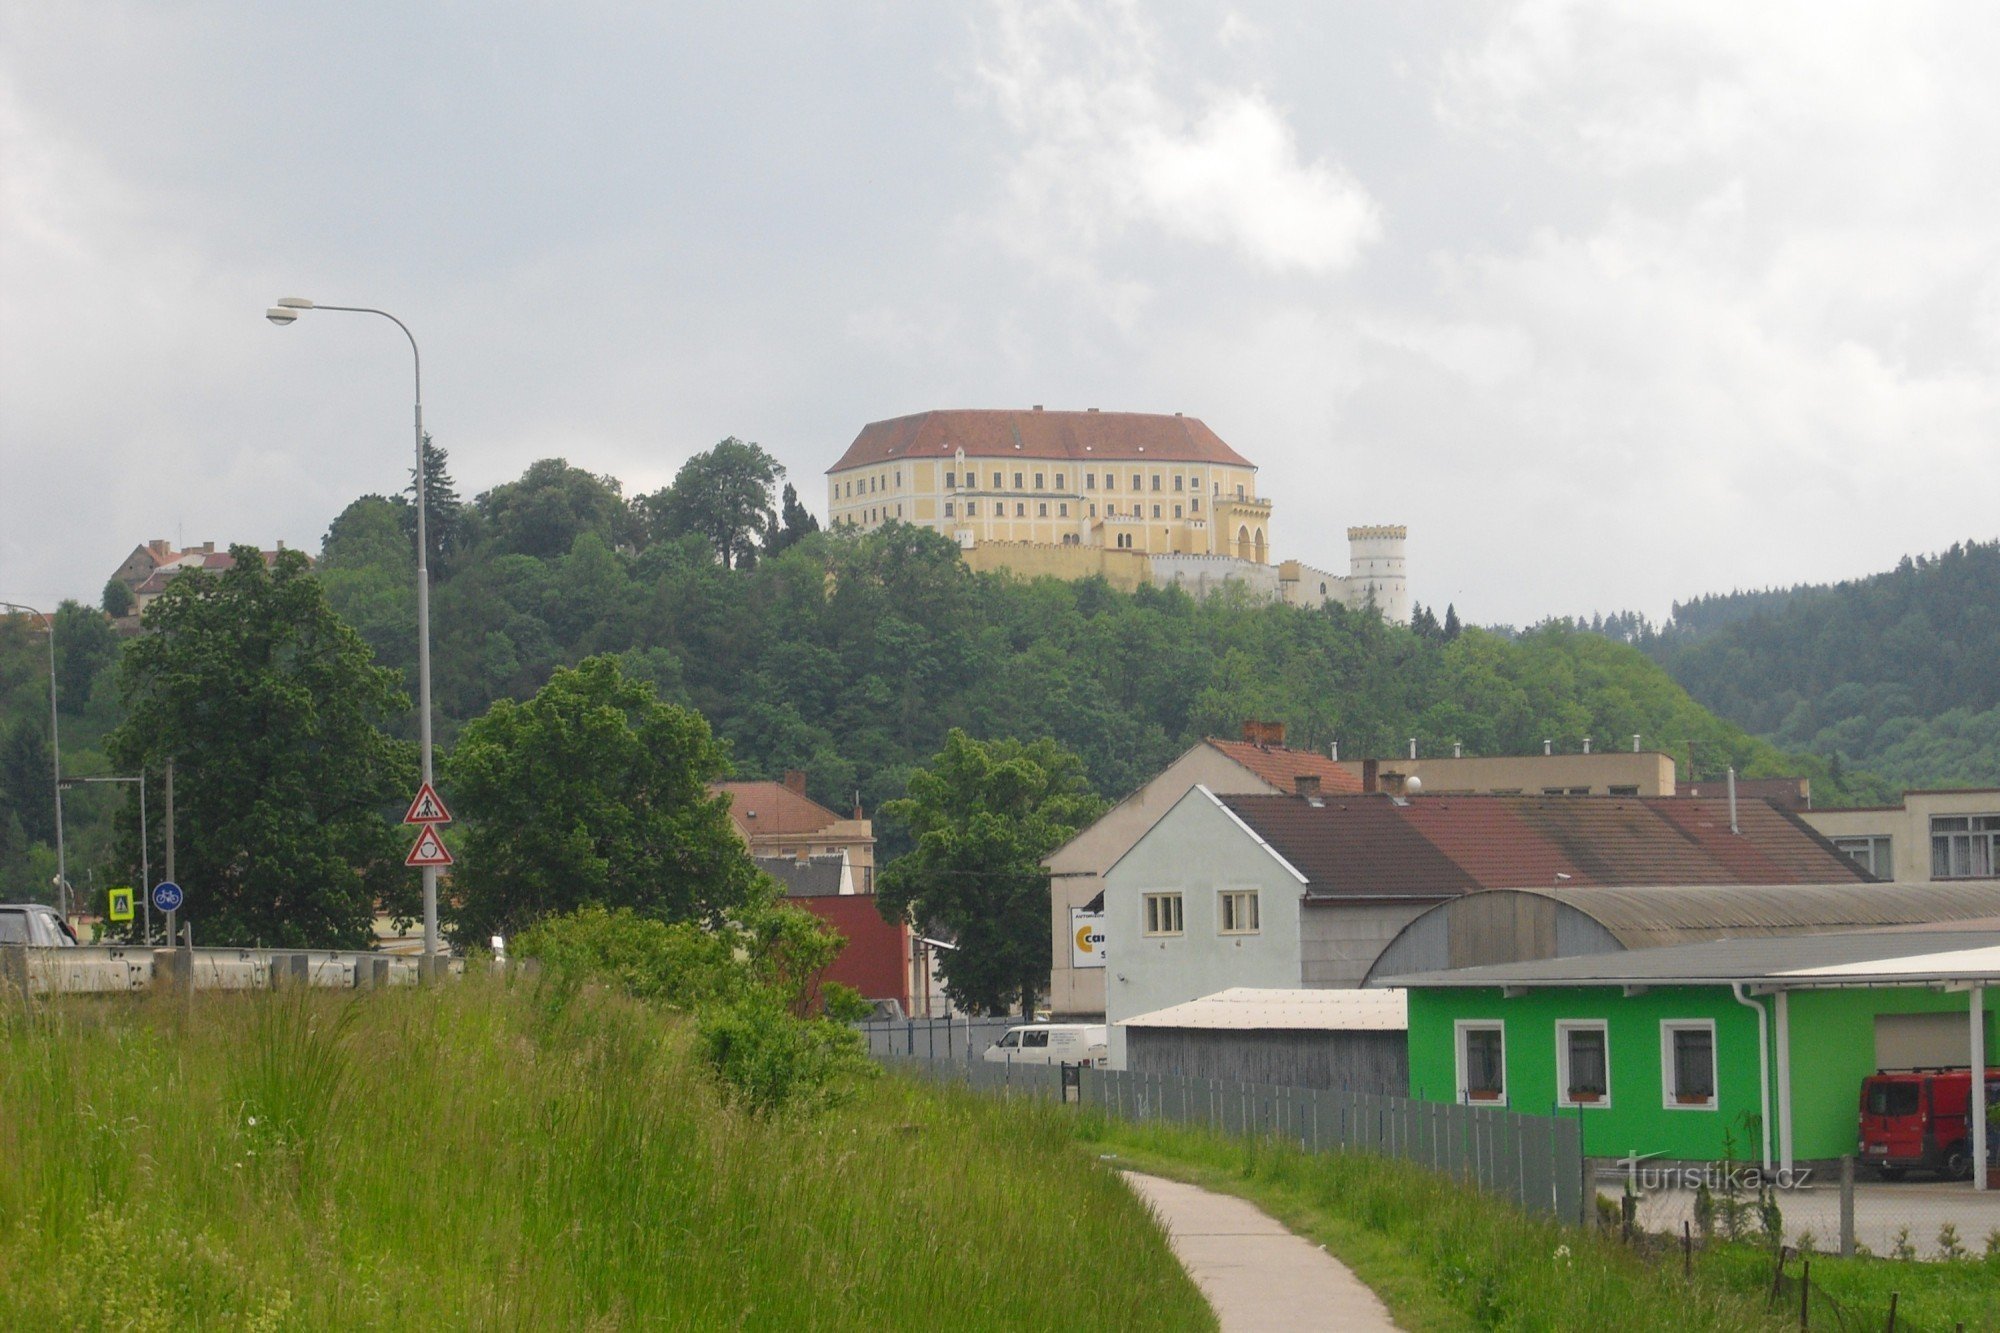 Letovice slott